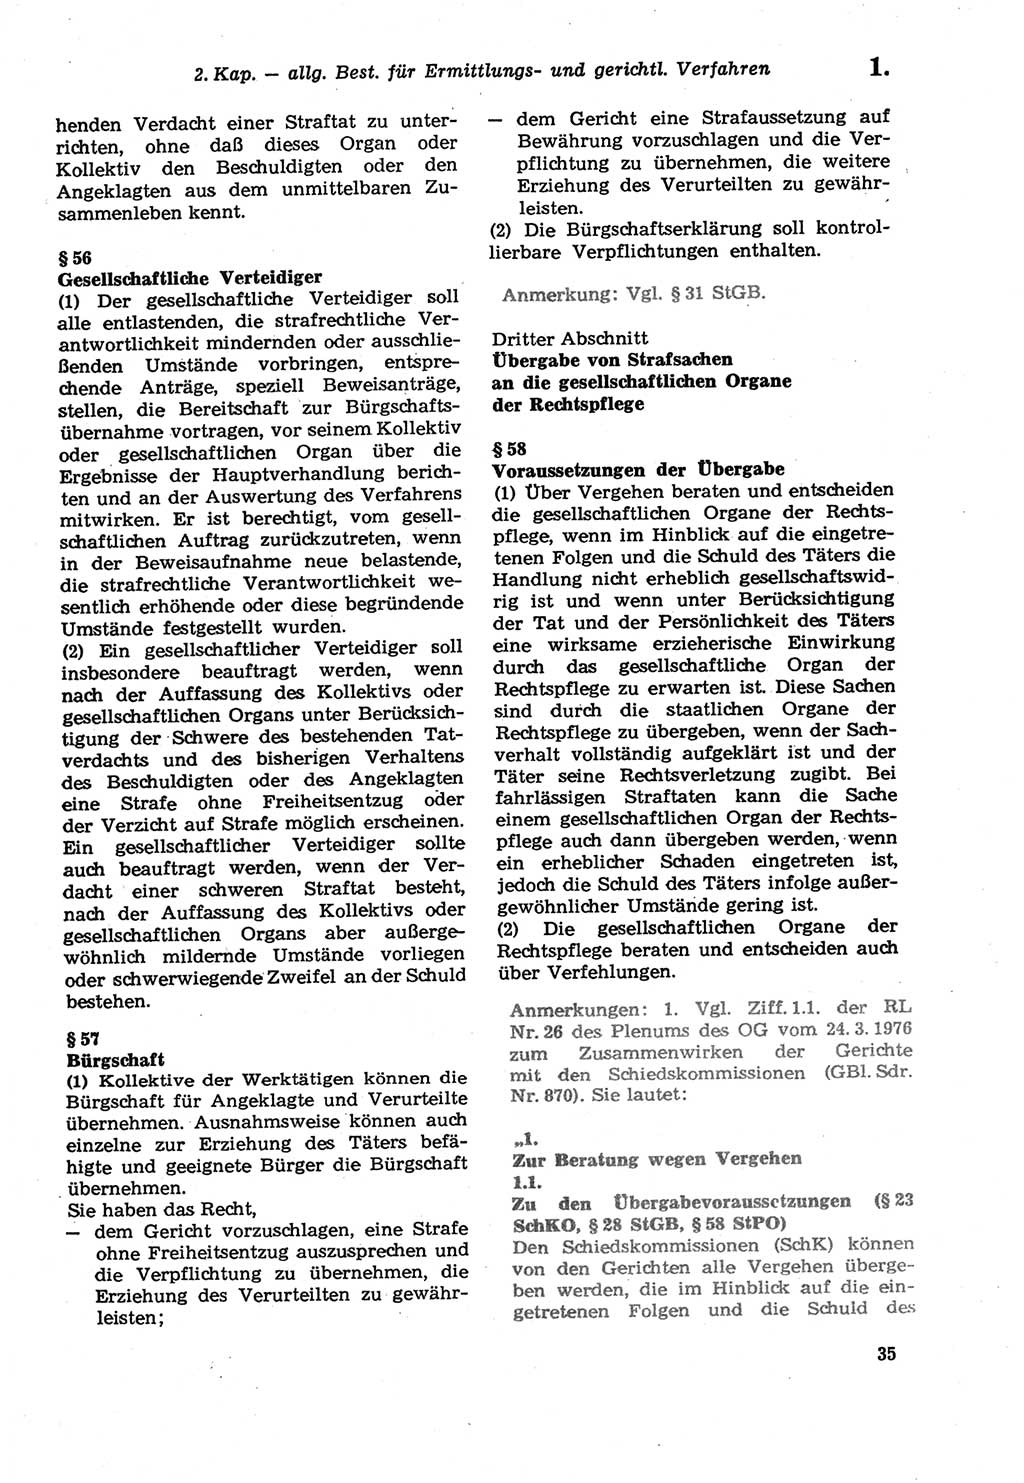 Strafprozeßordnung (StPO) der Deutschen Demokratischen Republik (DDR) sowie angrenzende Gesetze und Bestimmungen 1979, Seite 35 (StPO DDR Ges. Best. 1979, S. 35)